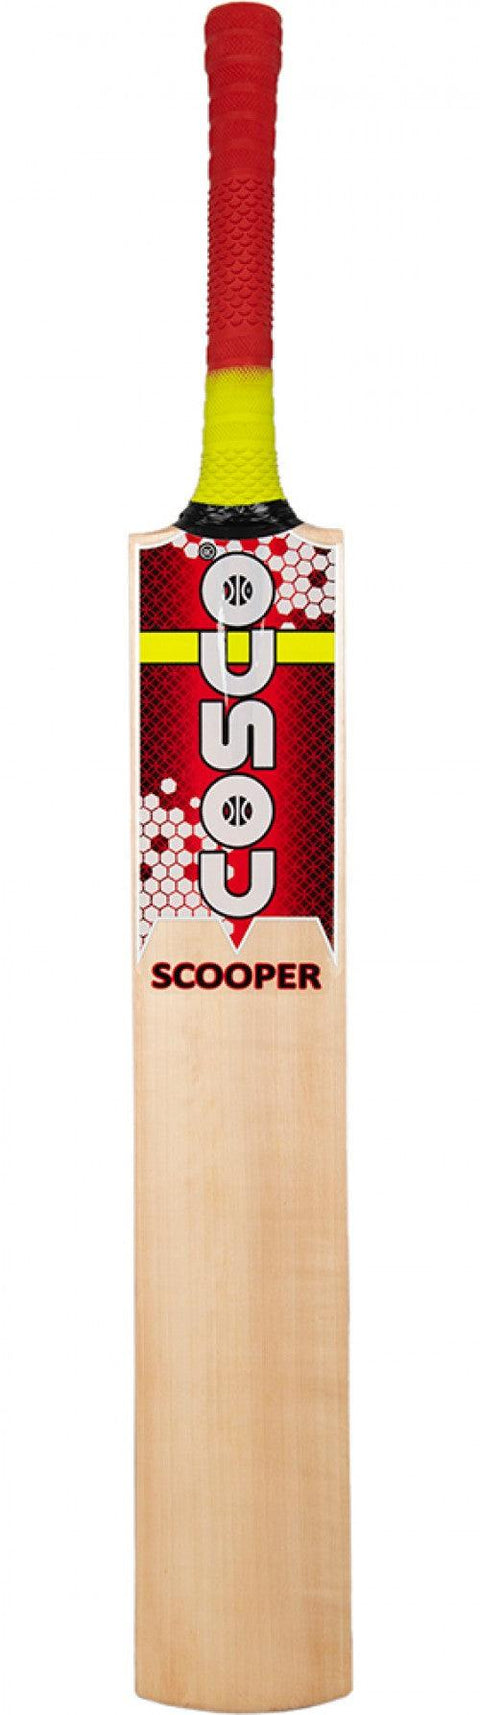 Cosco Scooper Tennis Cricket Bat | KIBI Sports - KIBI SPORTS